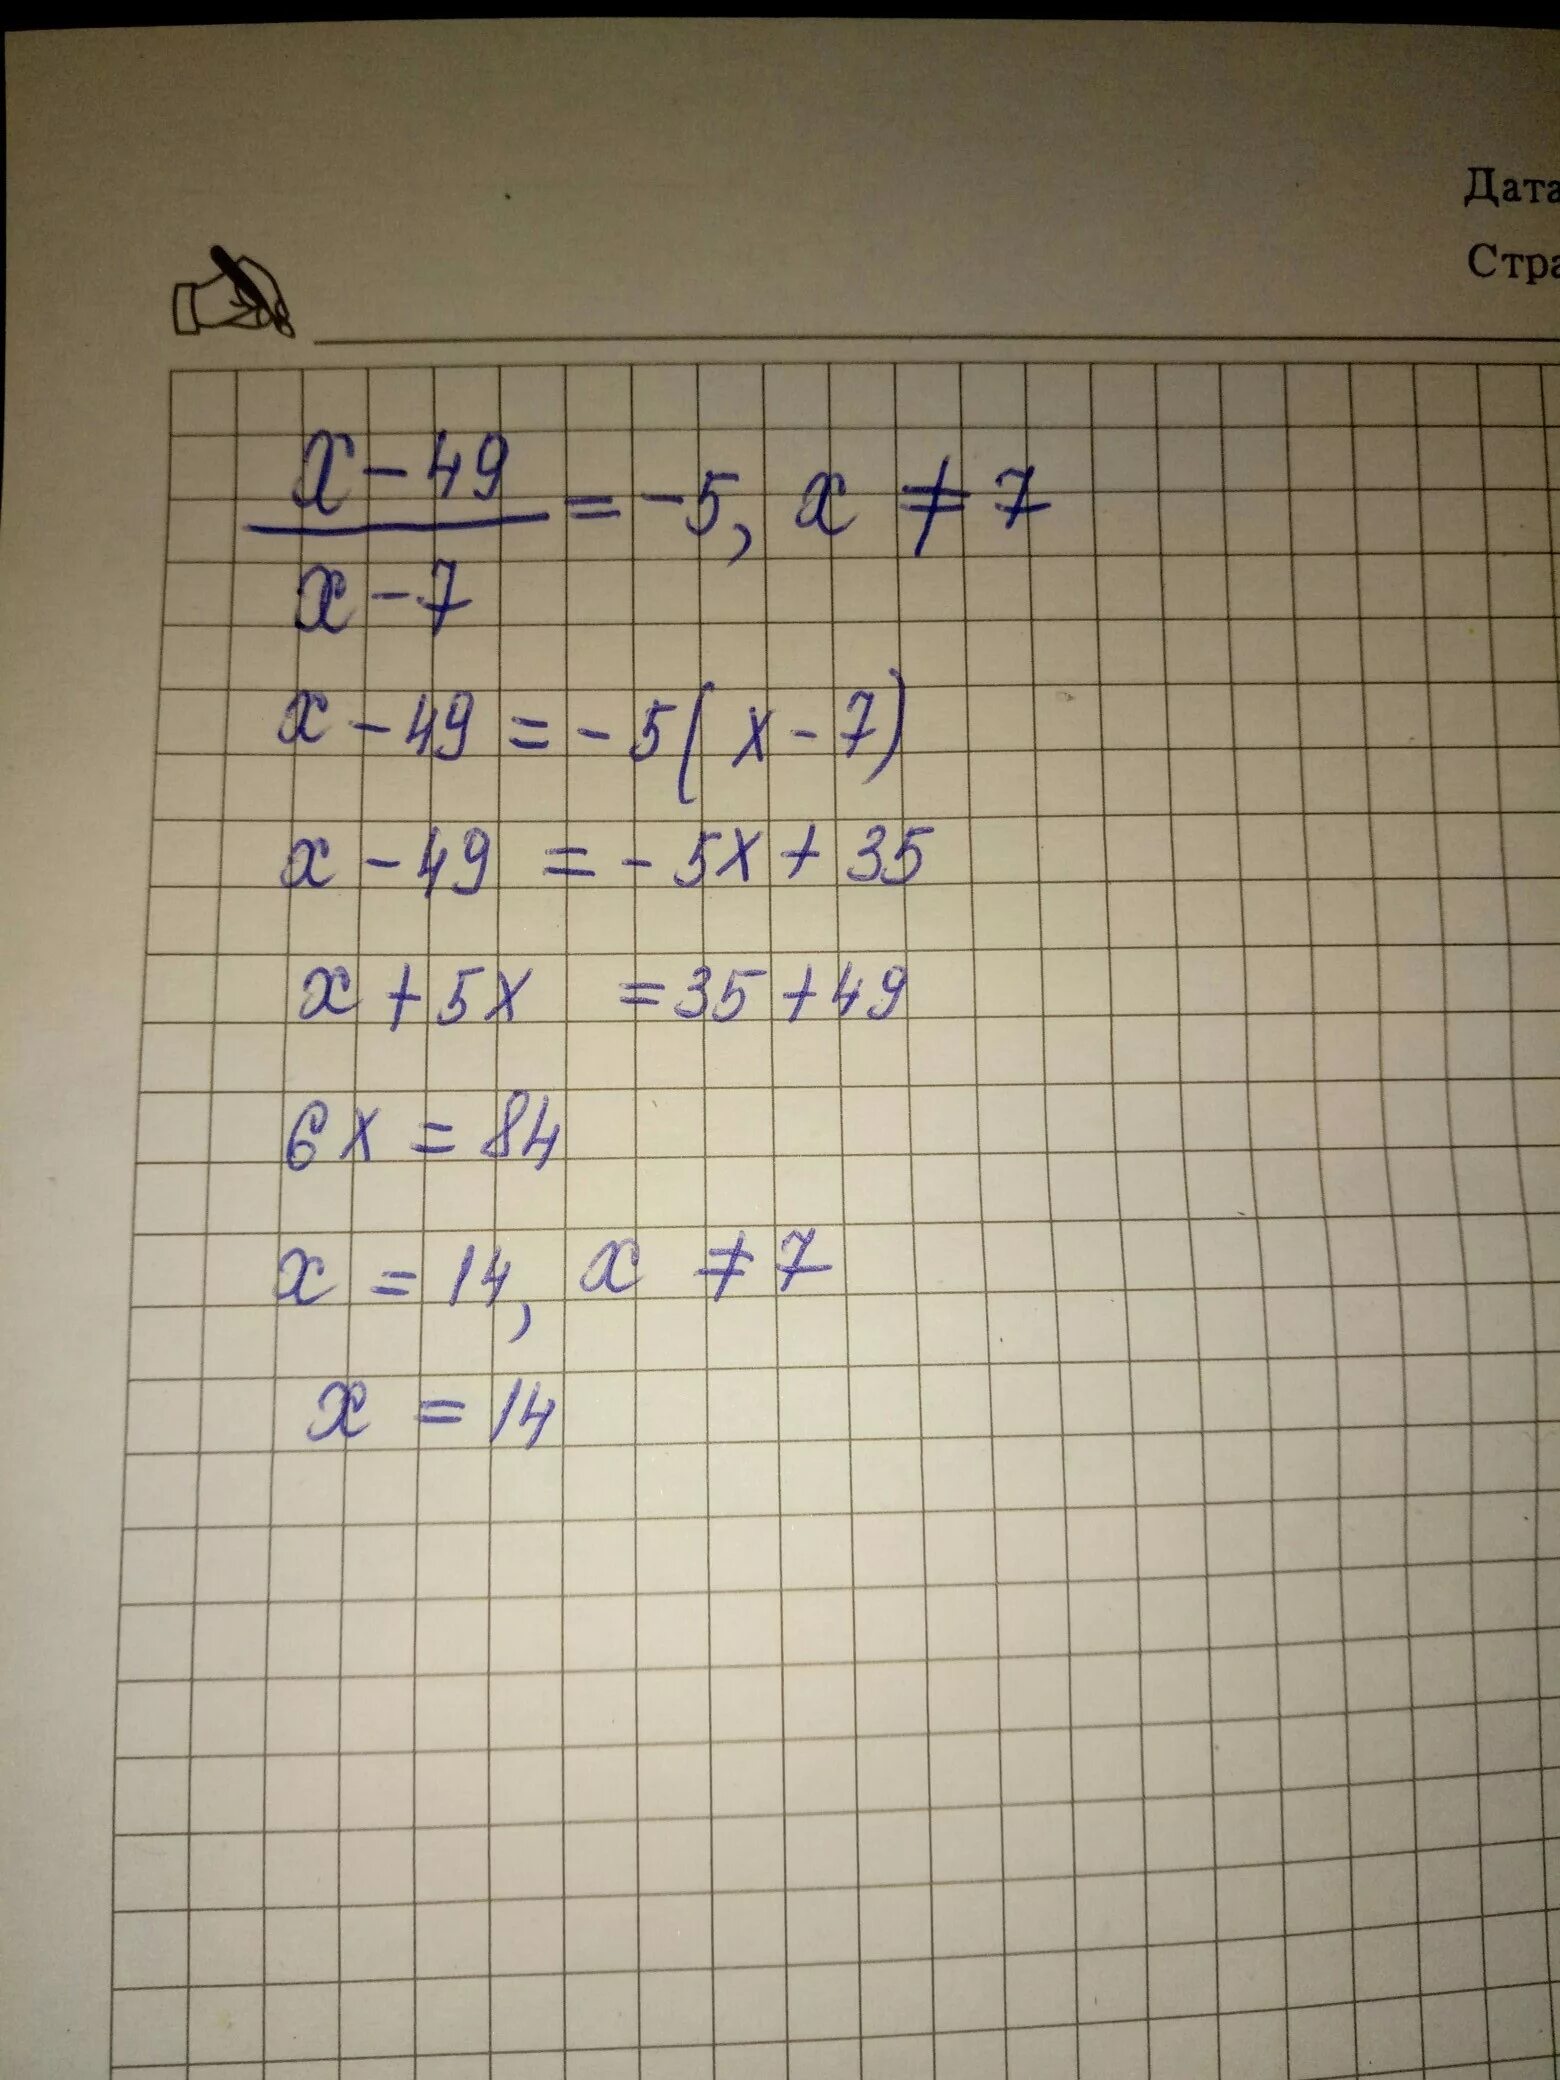 7x 14x 0. 7x=49. Х7÷х5 ответы. 7^(5+X)=49^X. 7 X 7 = 49.